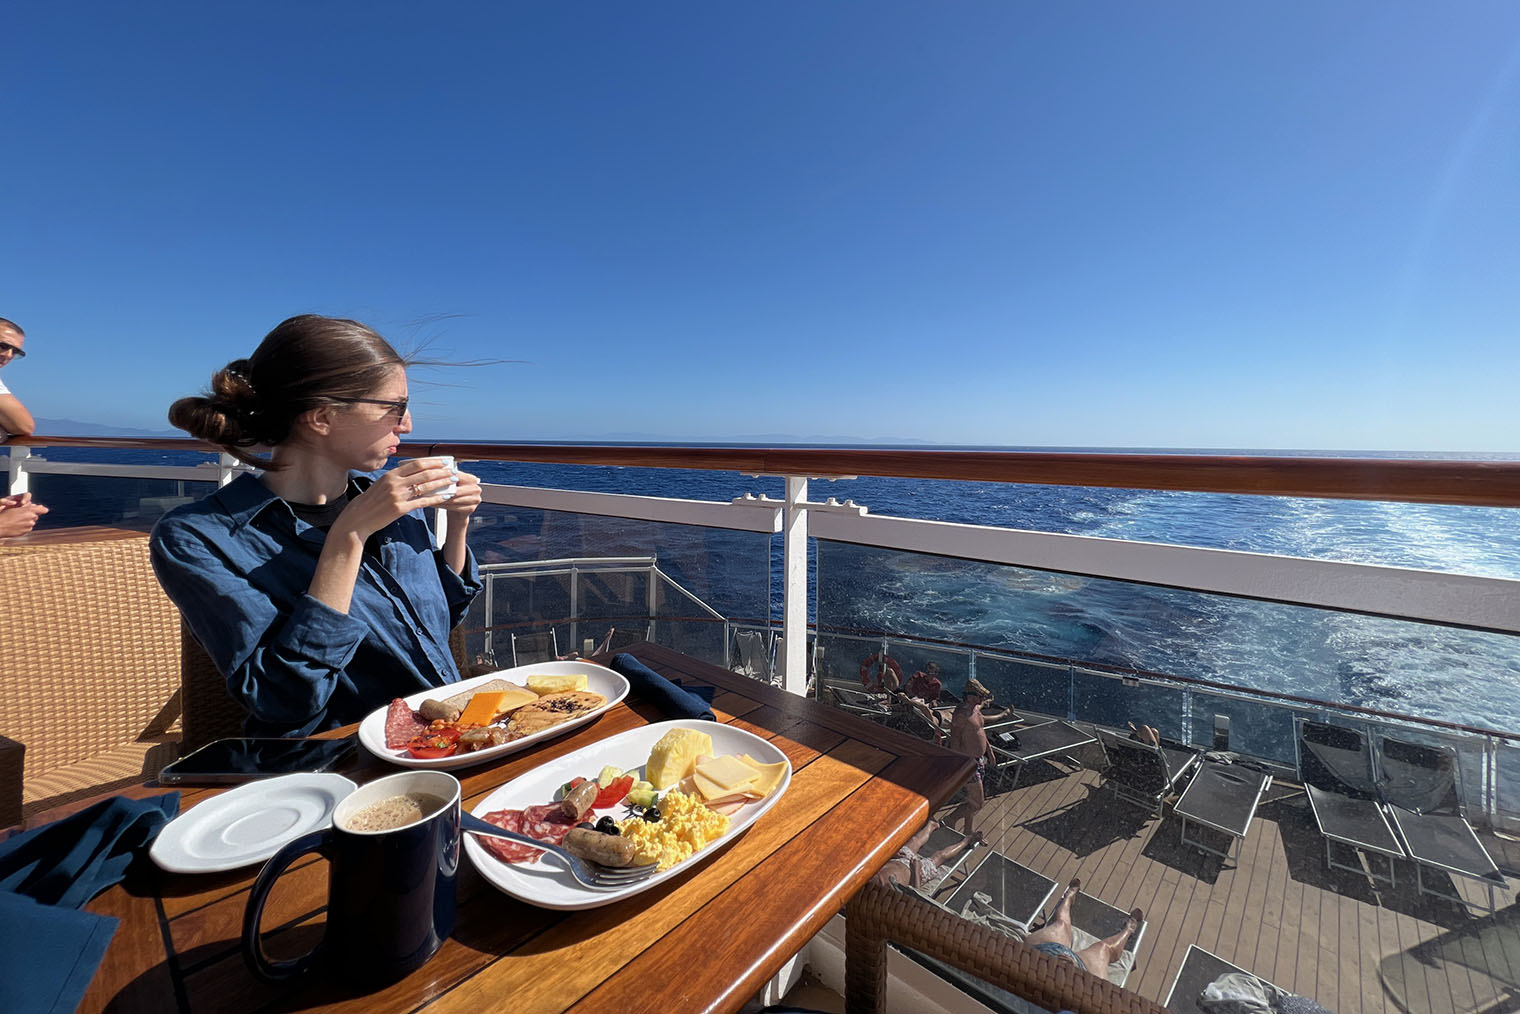 Завтрак на открытой палубе при шведском столе